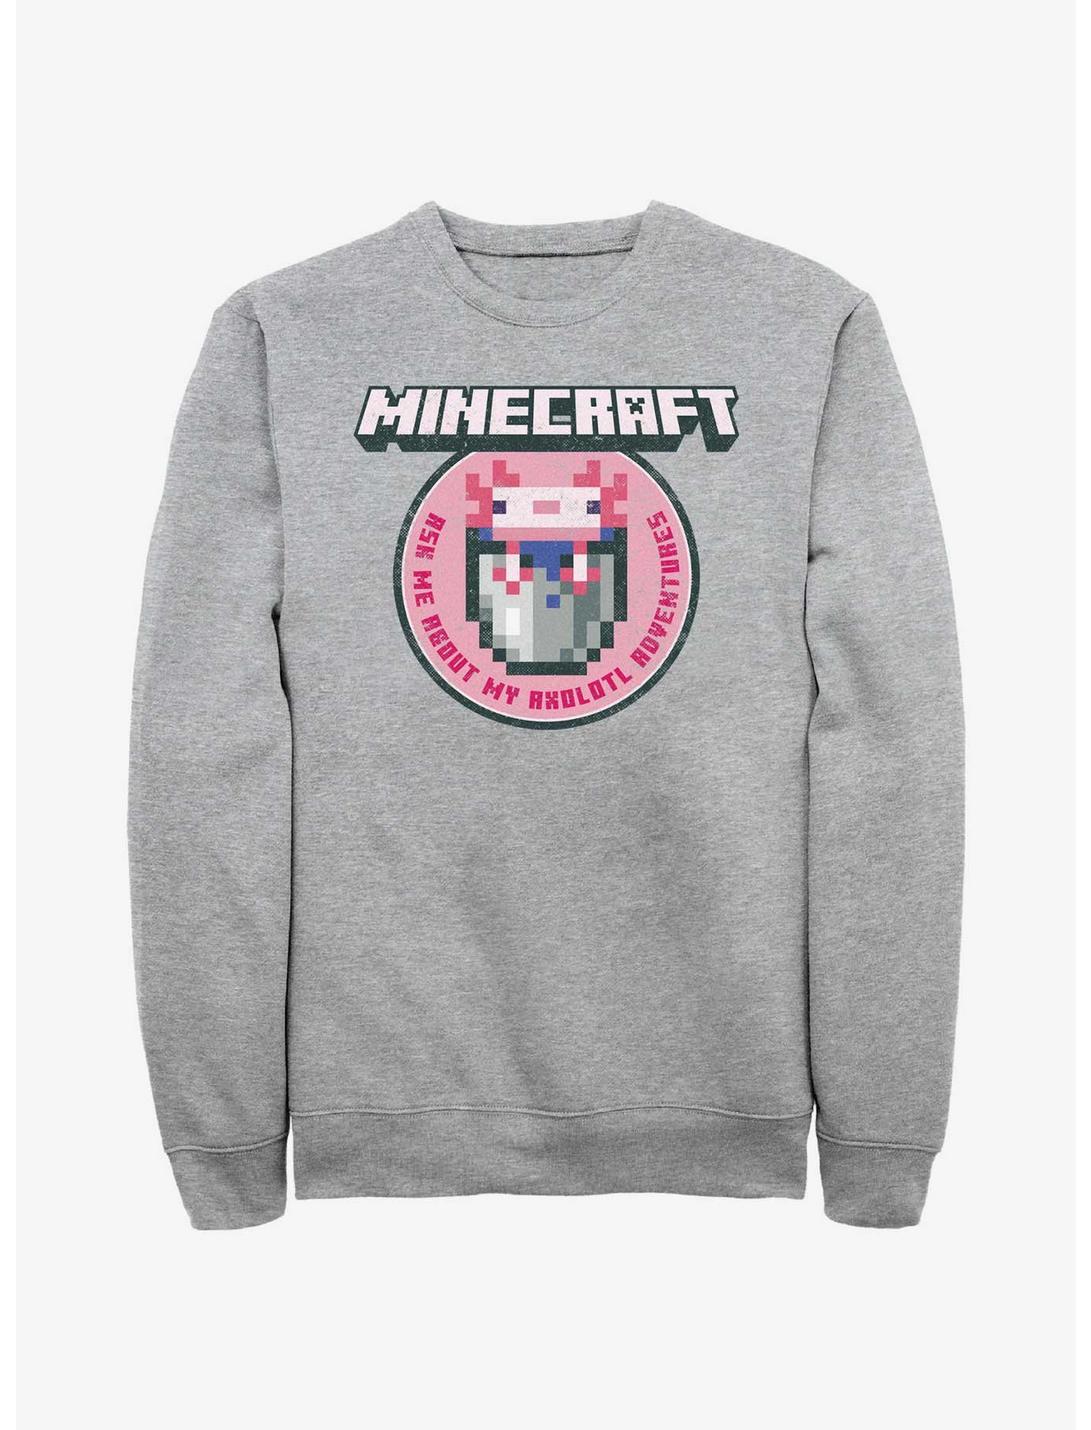 Minecraft Axolotl Adventures Sweatshirt, ATH HTR, hi-res